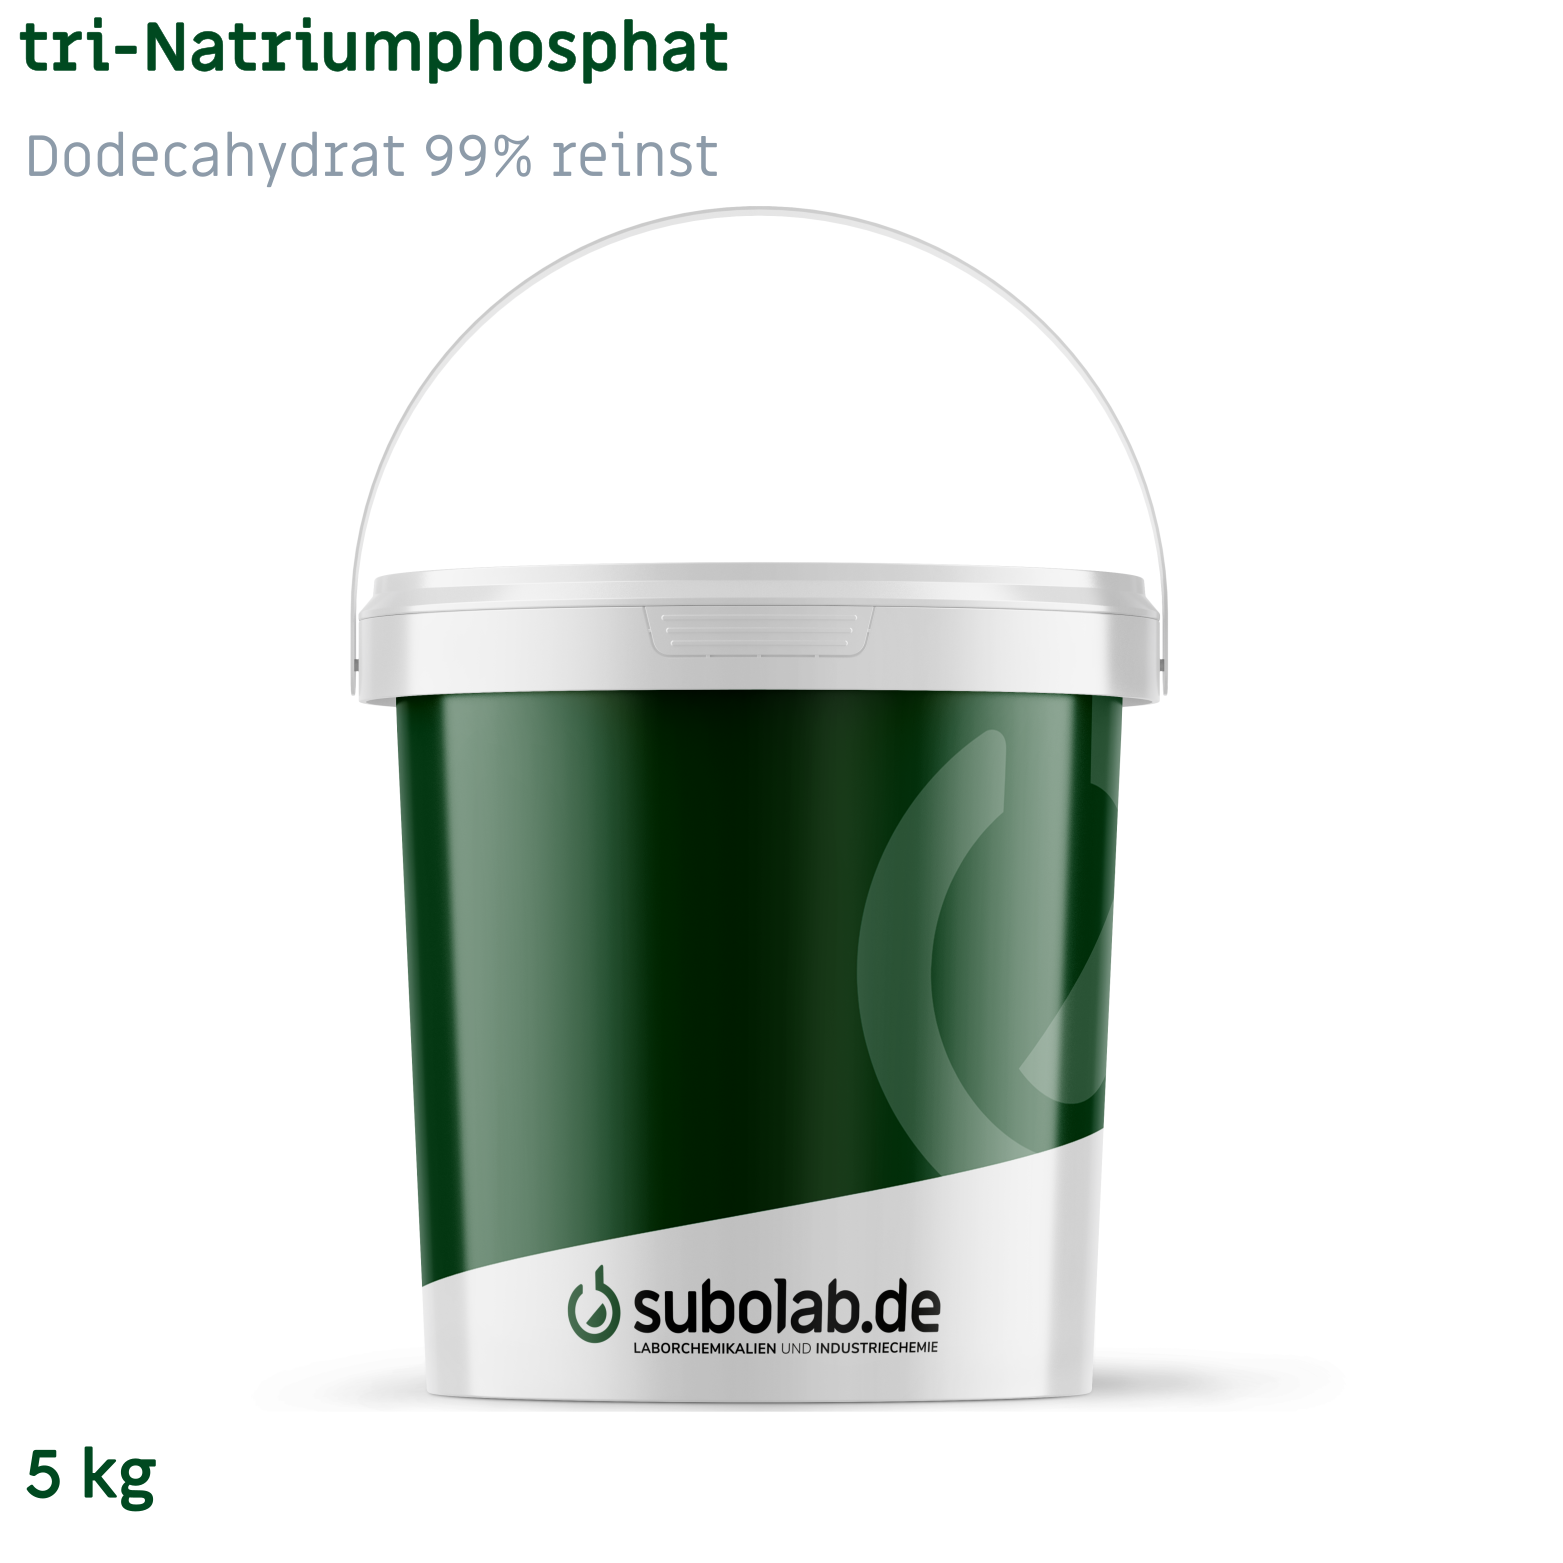 Bild von tri-Natriumphosphat - Dodecahydrat 99% reinst (5 kg)